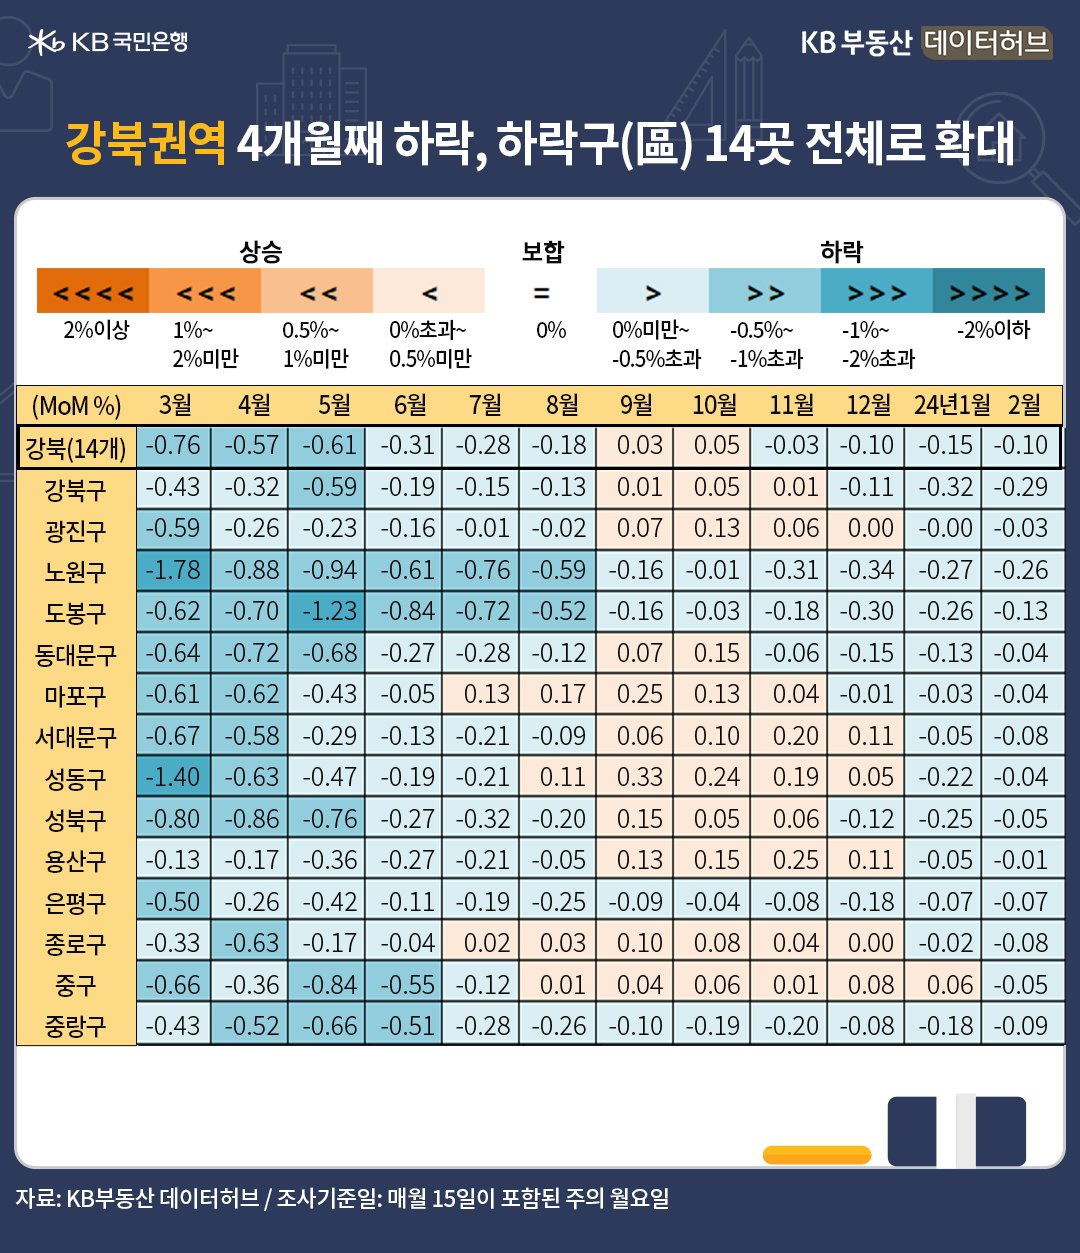 '서울 주택매매가격'은 강남 상승 반전, 강북 약세 2월의 지역별 주택가격 변동을 색상 테이블로 설명해 드립니다. '푸른색'이 진할수록 '하락률'이 큰 지역이고, 옅어질수록 회복되는 지역입니다. '붉은색'은 '상승' 지역입니다.